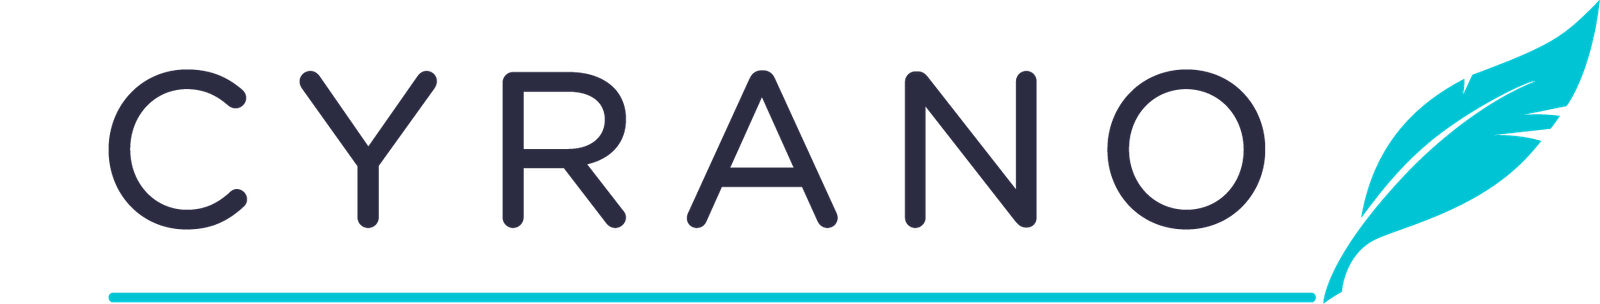 cyrano-logo